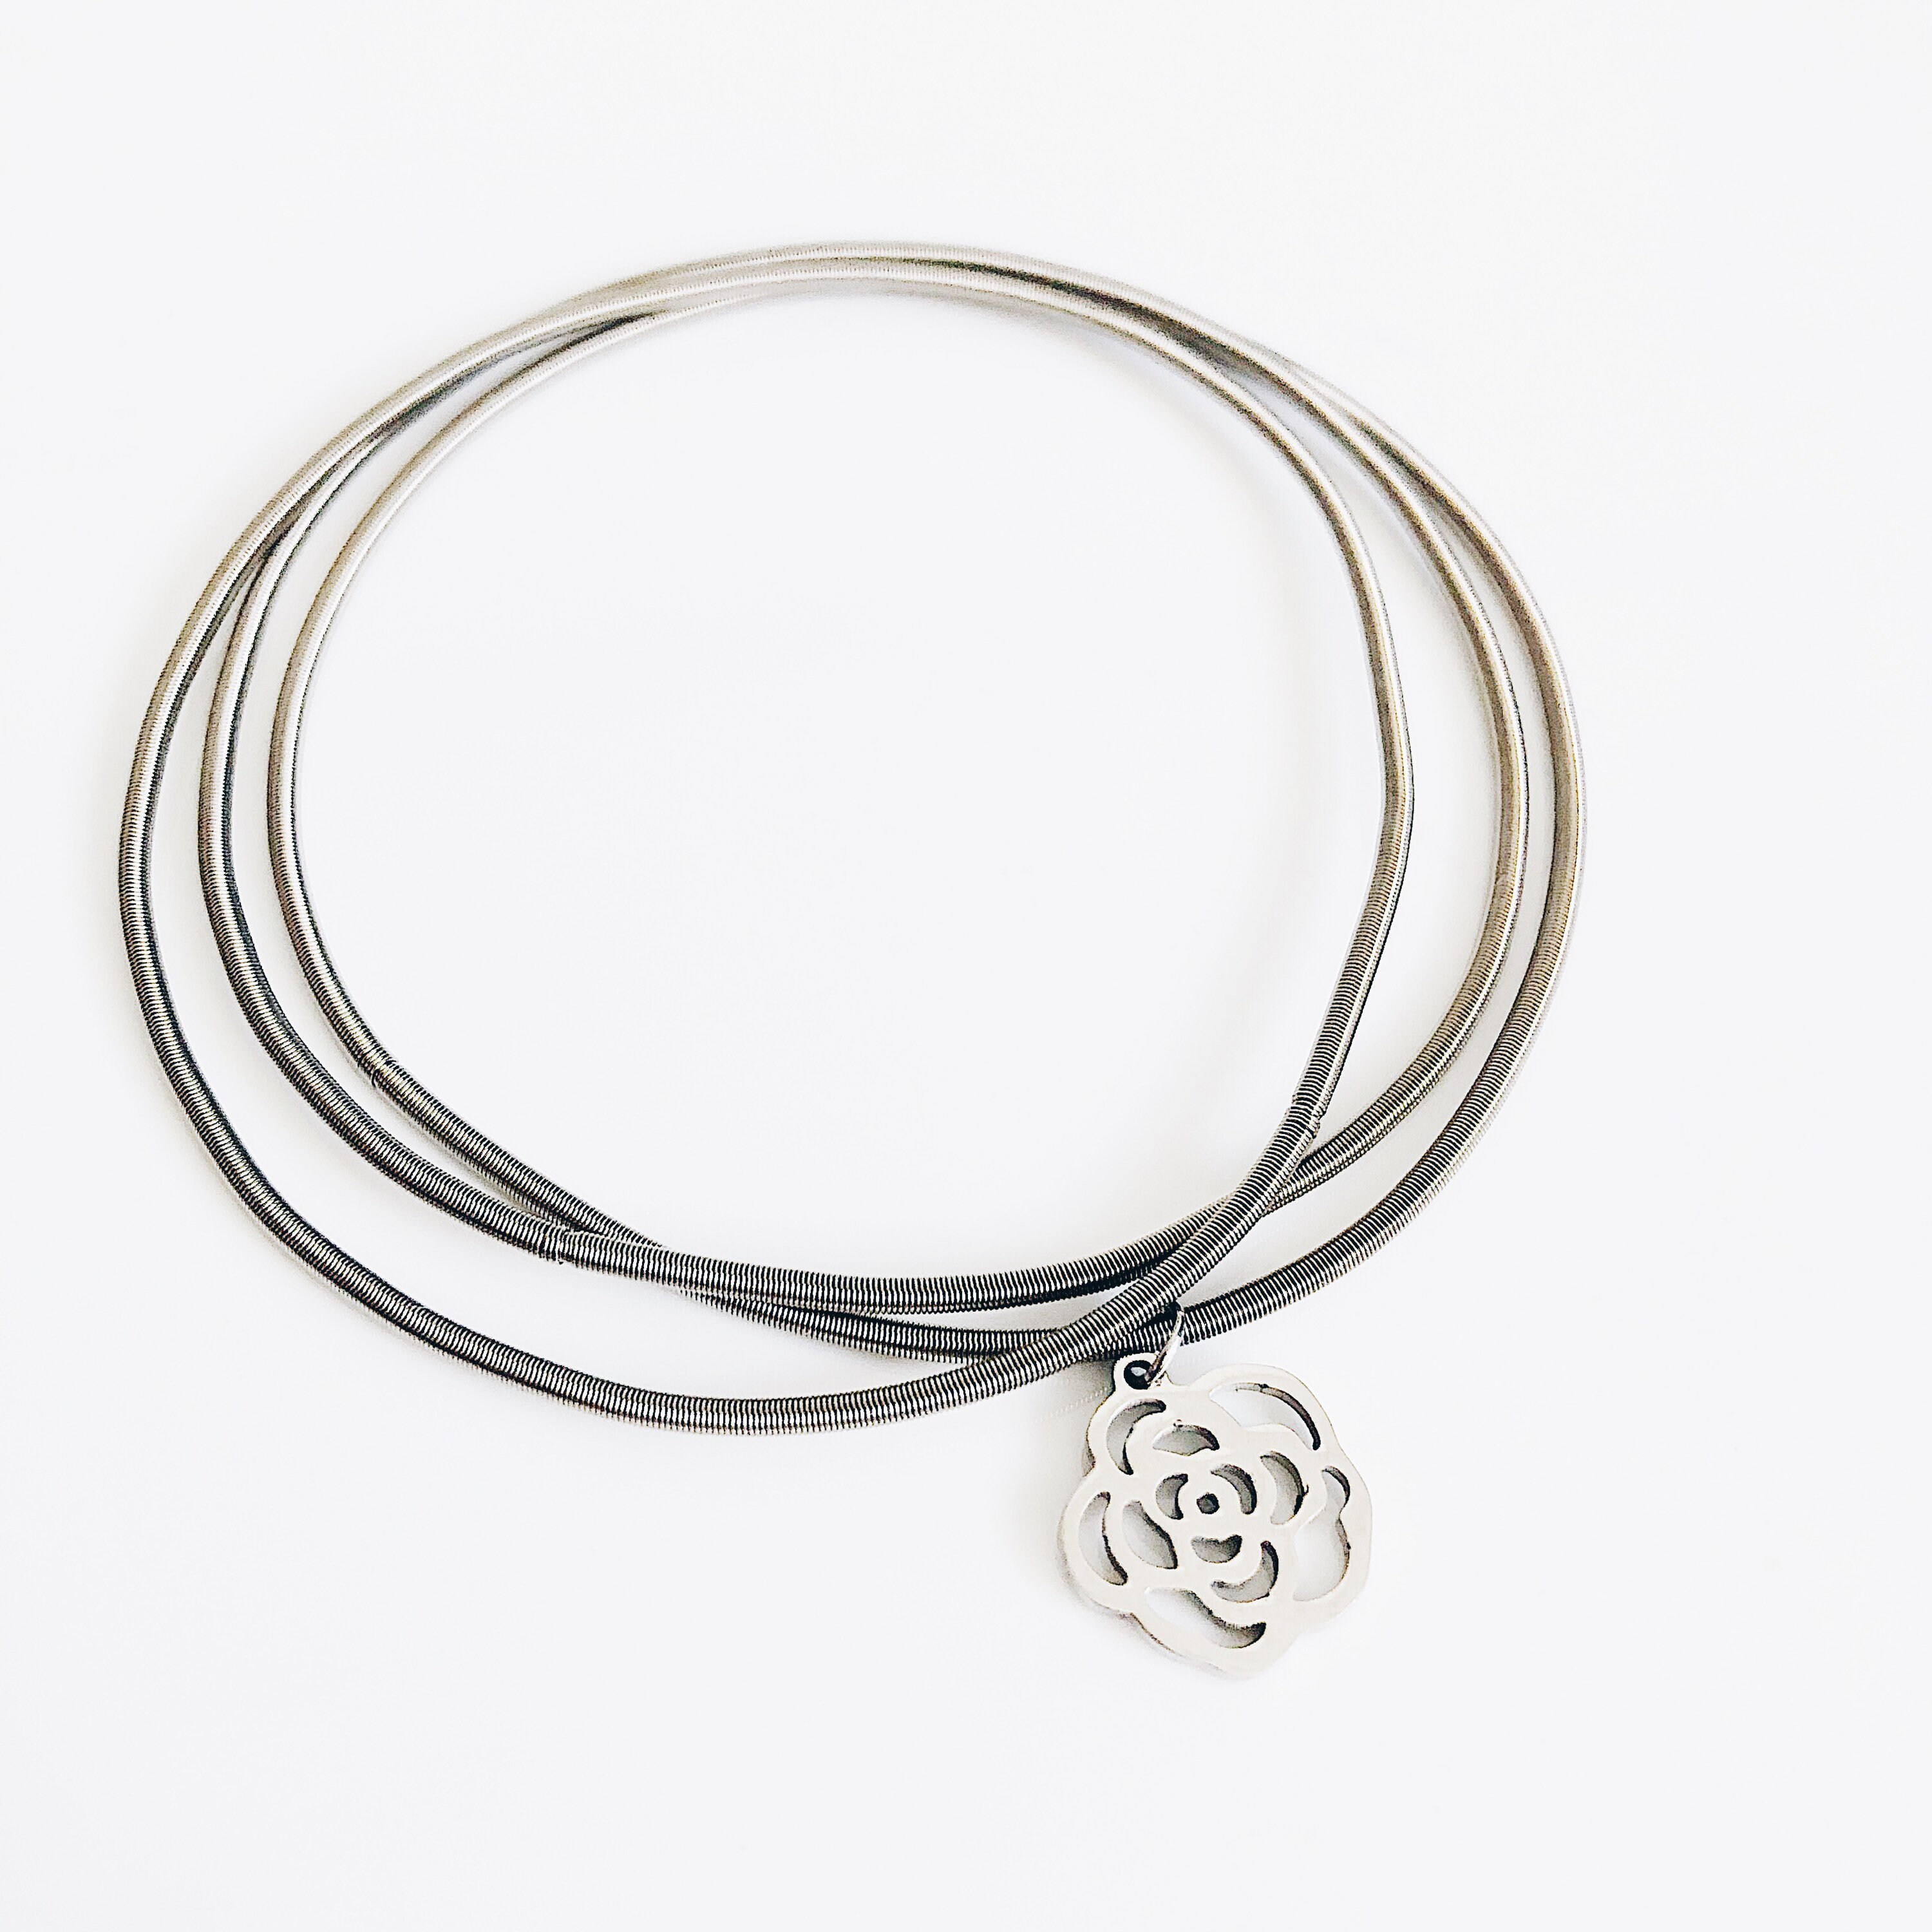 Flower silver bracelet for women Multi-layer stainless | Etsy